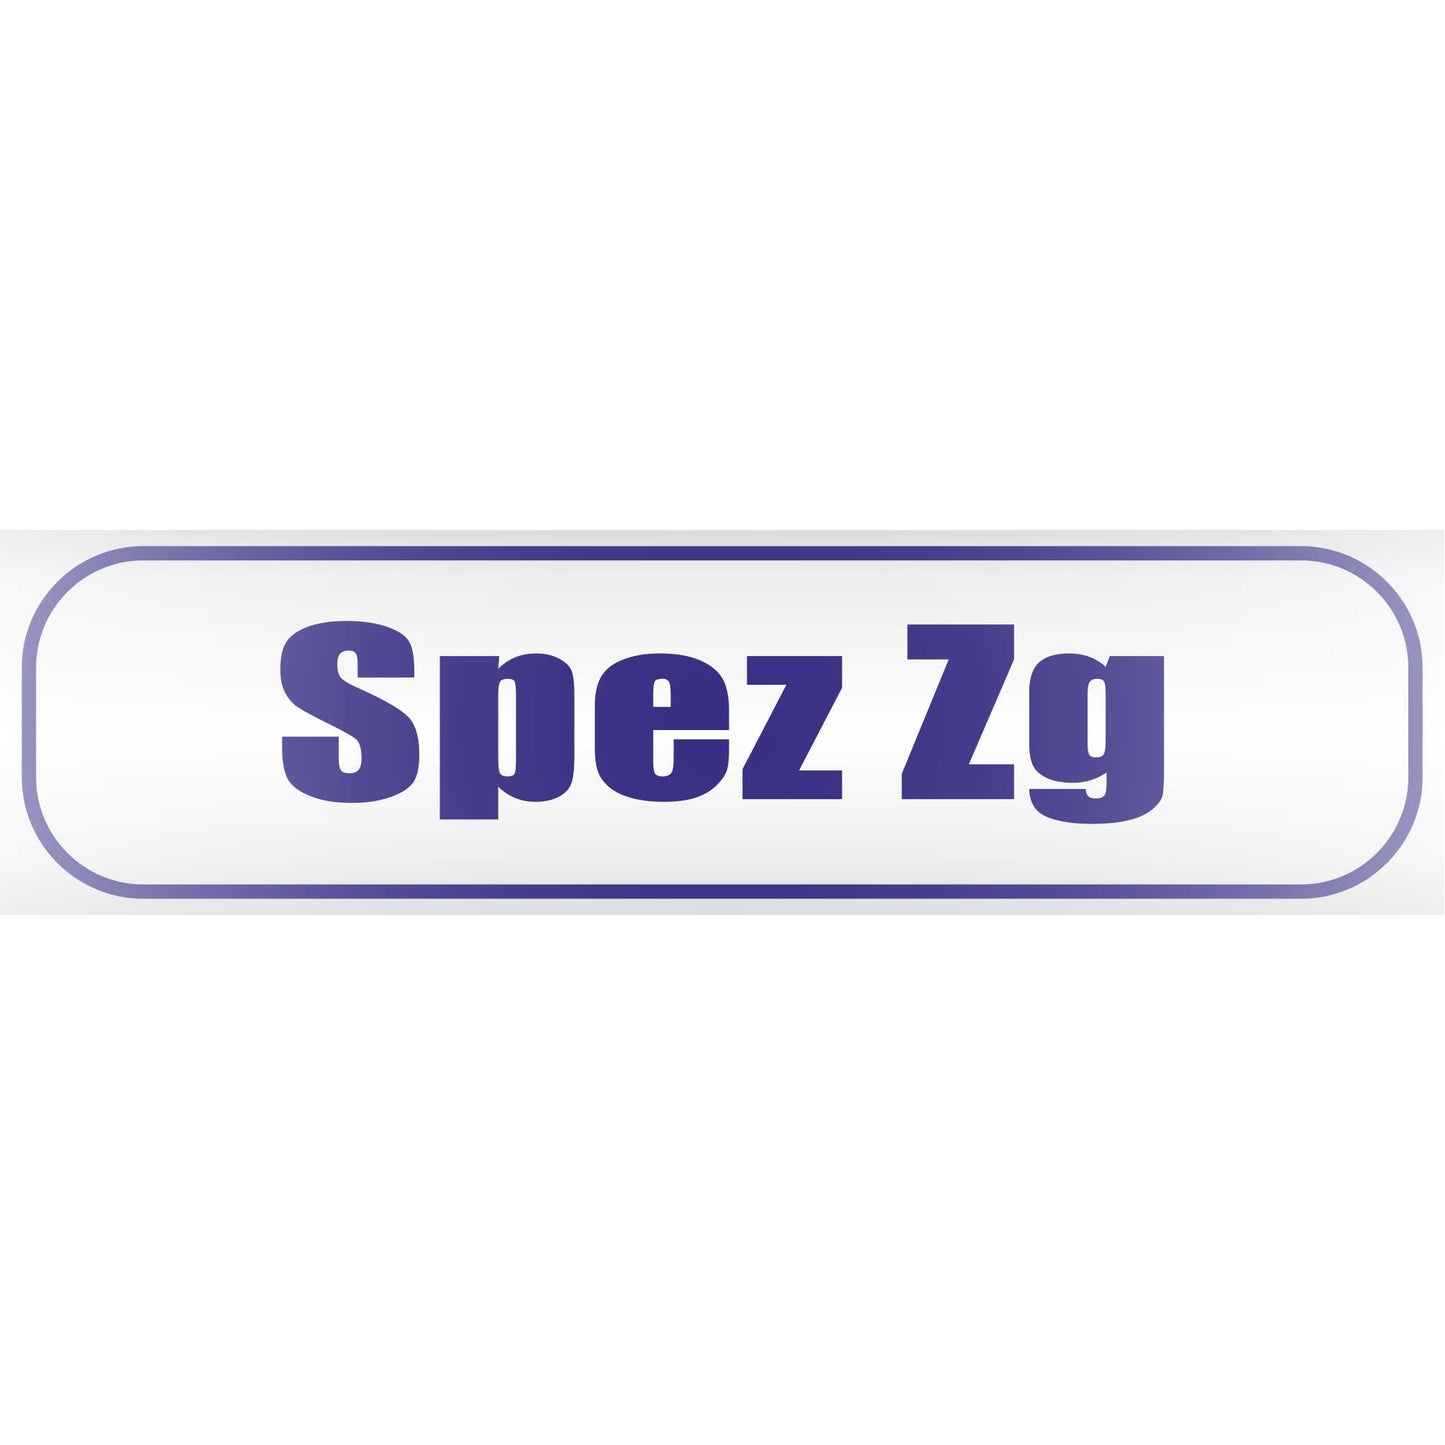 Magnetschild - Spez zg Spezialzug - Magnetfolie für Auto - LKW - Truck - Baustelle - Firma